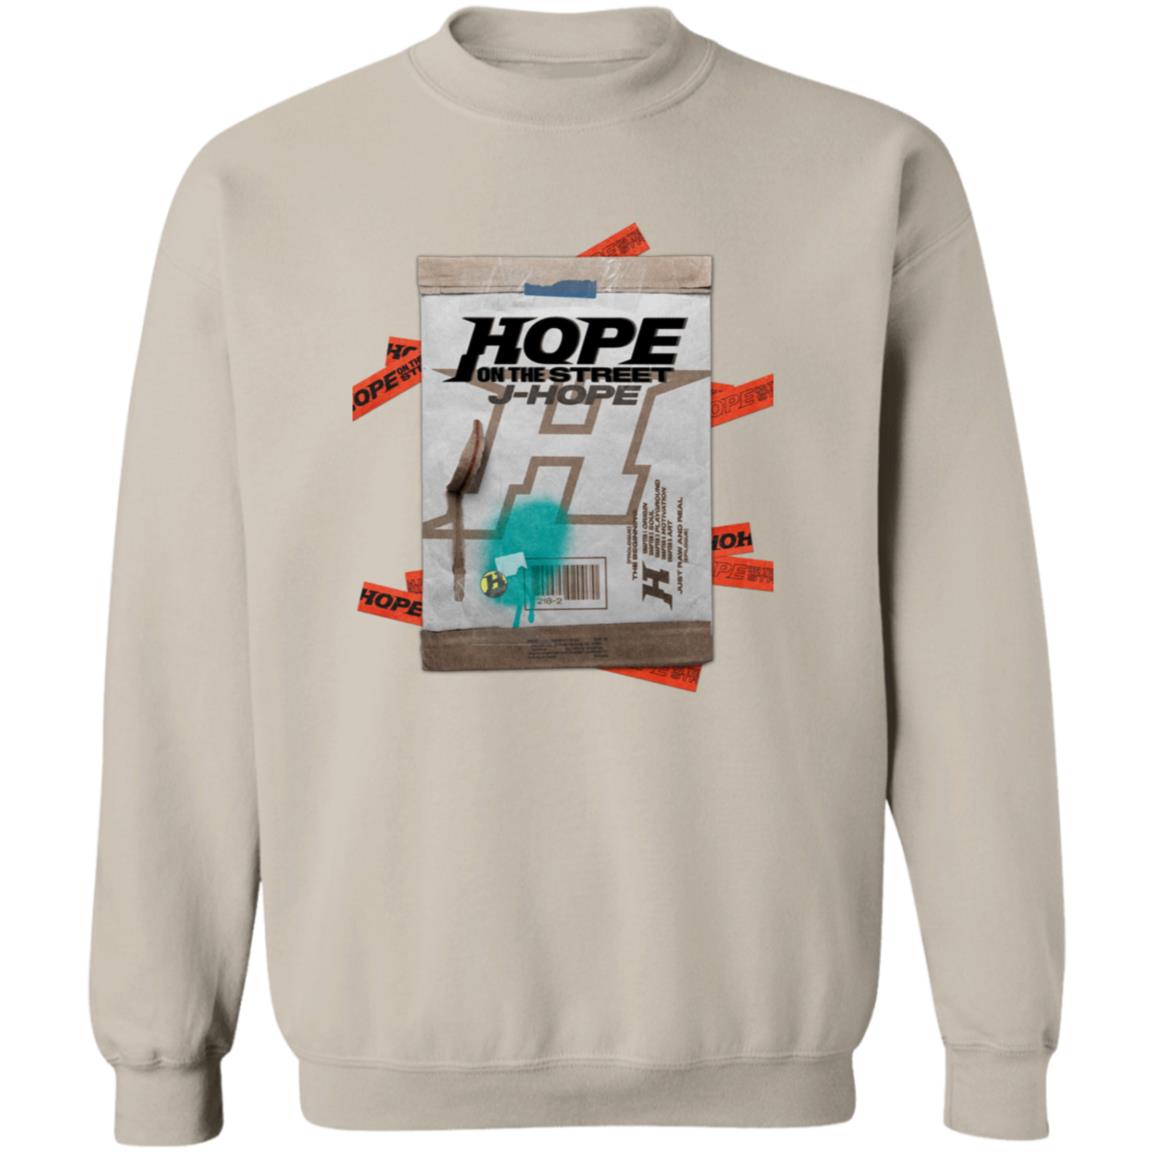 J-Hope Hope on the Street Crewneck Sweatshirt